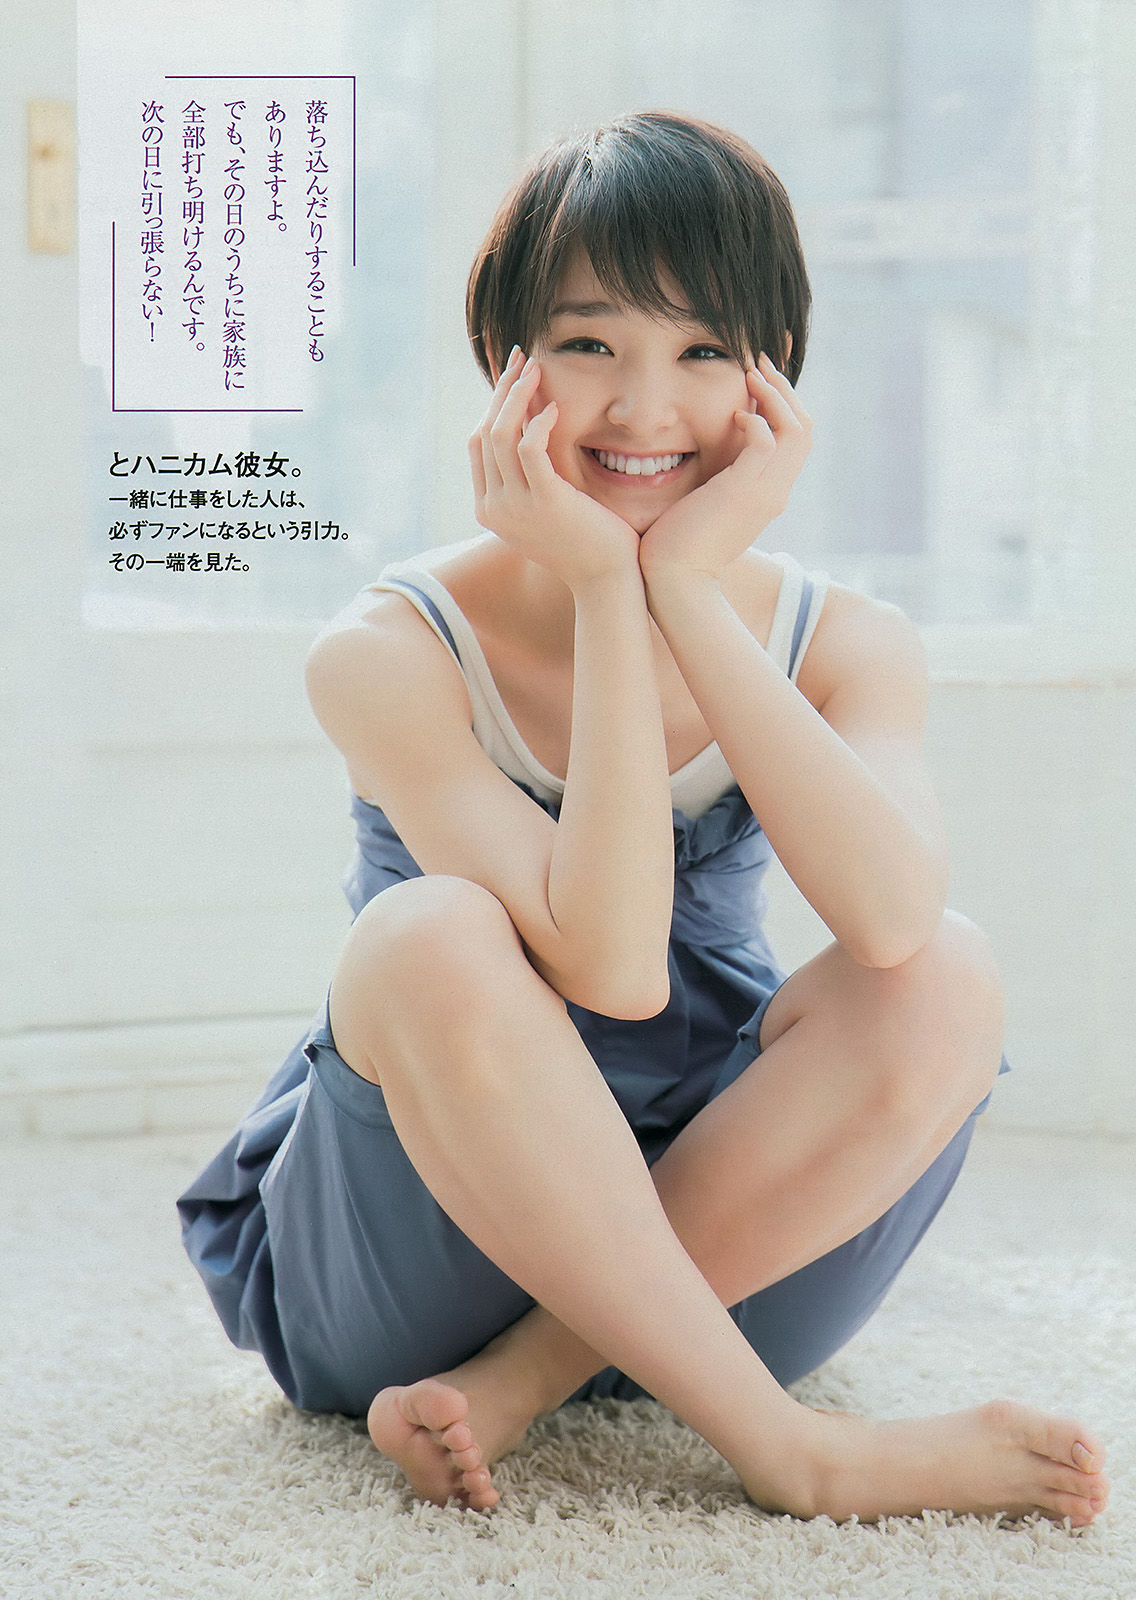 [Young Magazine] 2014年No.19 剛力彩芽 佐野ひなこ 椎名ひかり